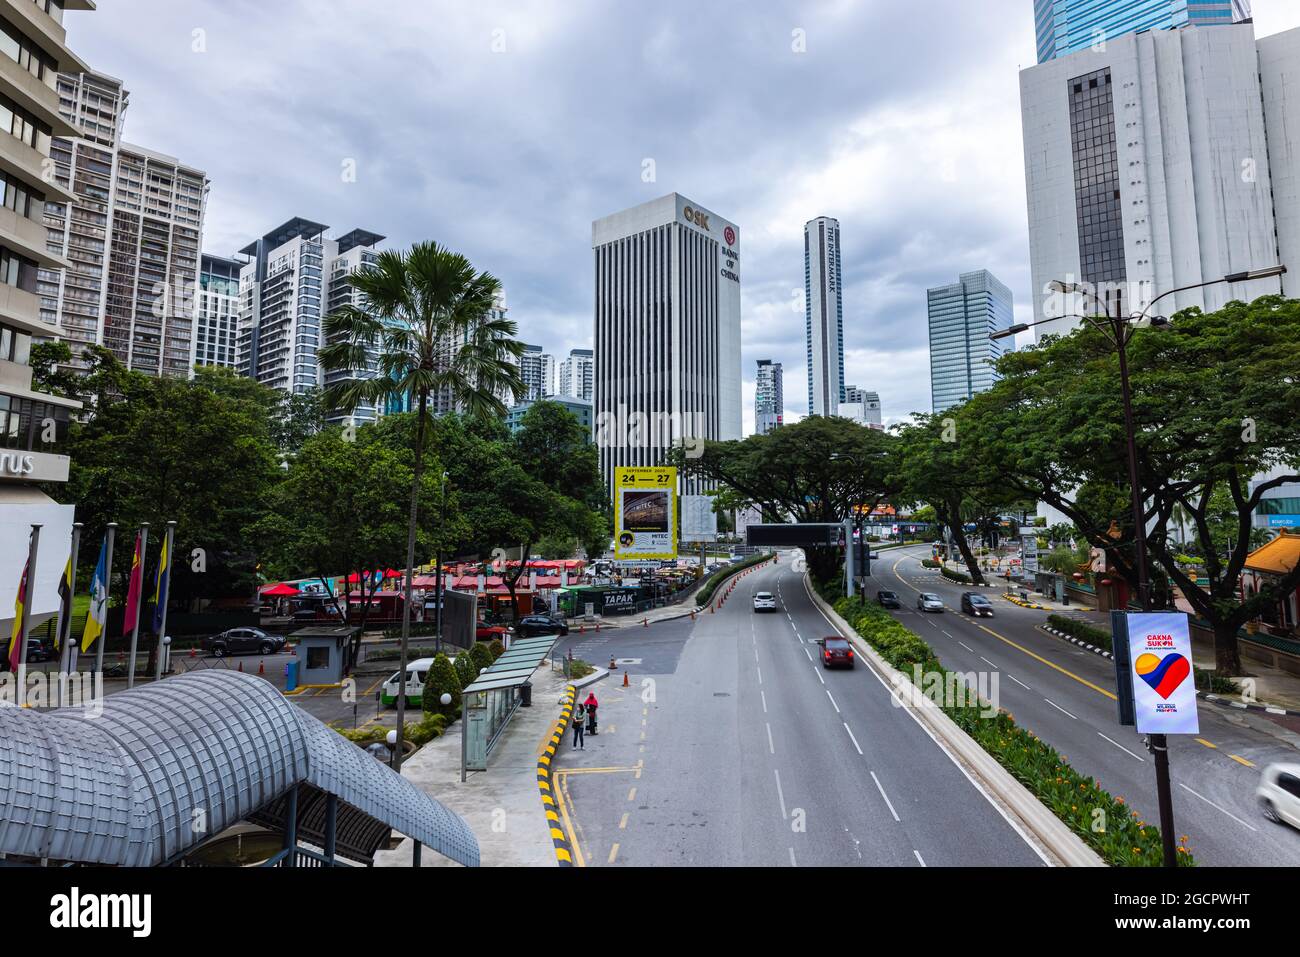 Kuala Lumpur, Malaisie - 09 janvier 2021 : vue sur la rue dans le centre-ville de Kuala Lumpur. Les rues animées jusqu'au bâtiment de la Banque de Chine et à la tour Intermark Banque D'Images